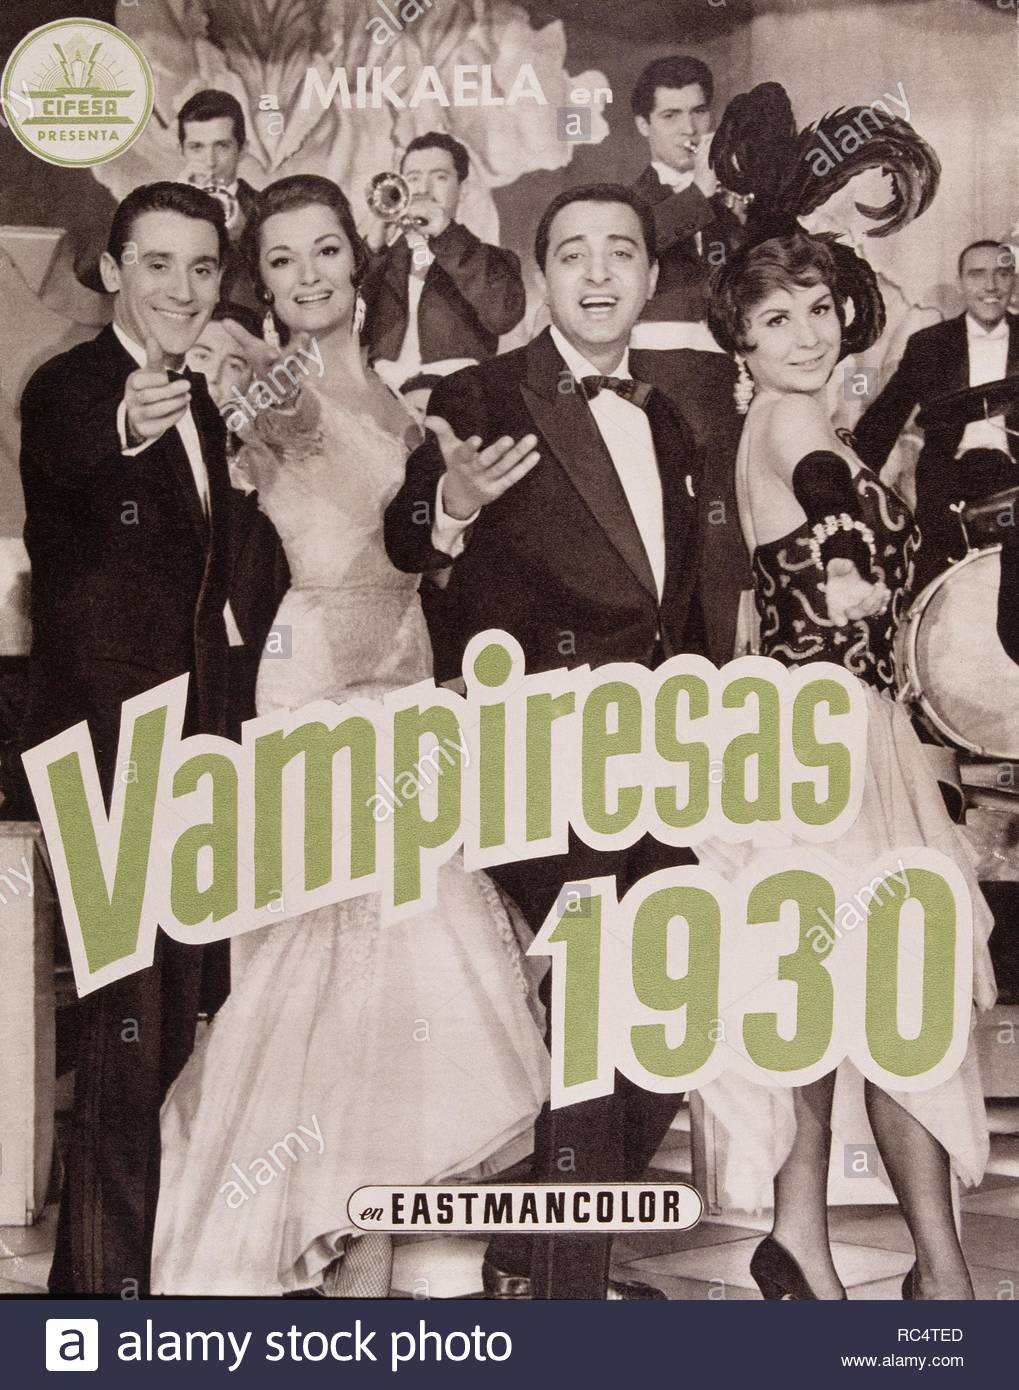 cartel-de-la-pelicula-vampiresas-director-jesus-franco-mikaela-micaela-rodriguez-cuesta-con-lina-morgan-y-antonio-ozores-1961-rc4ted